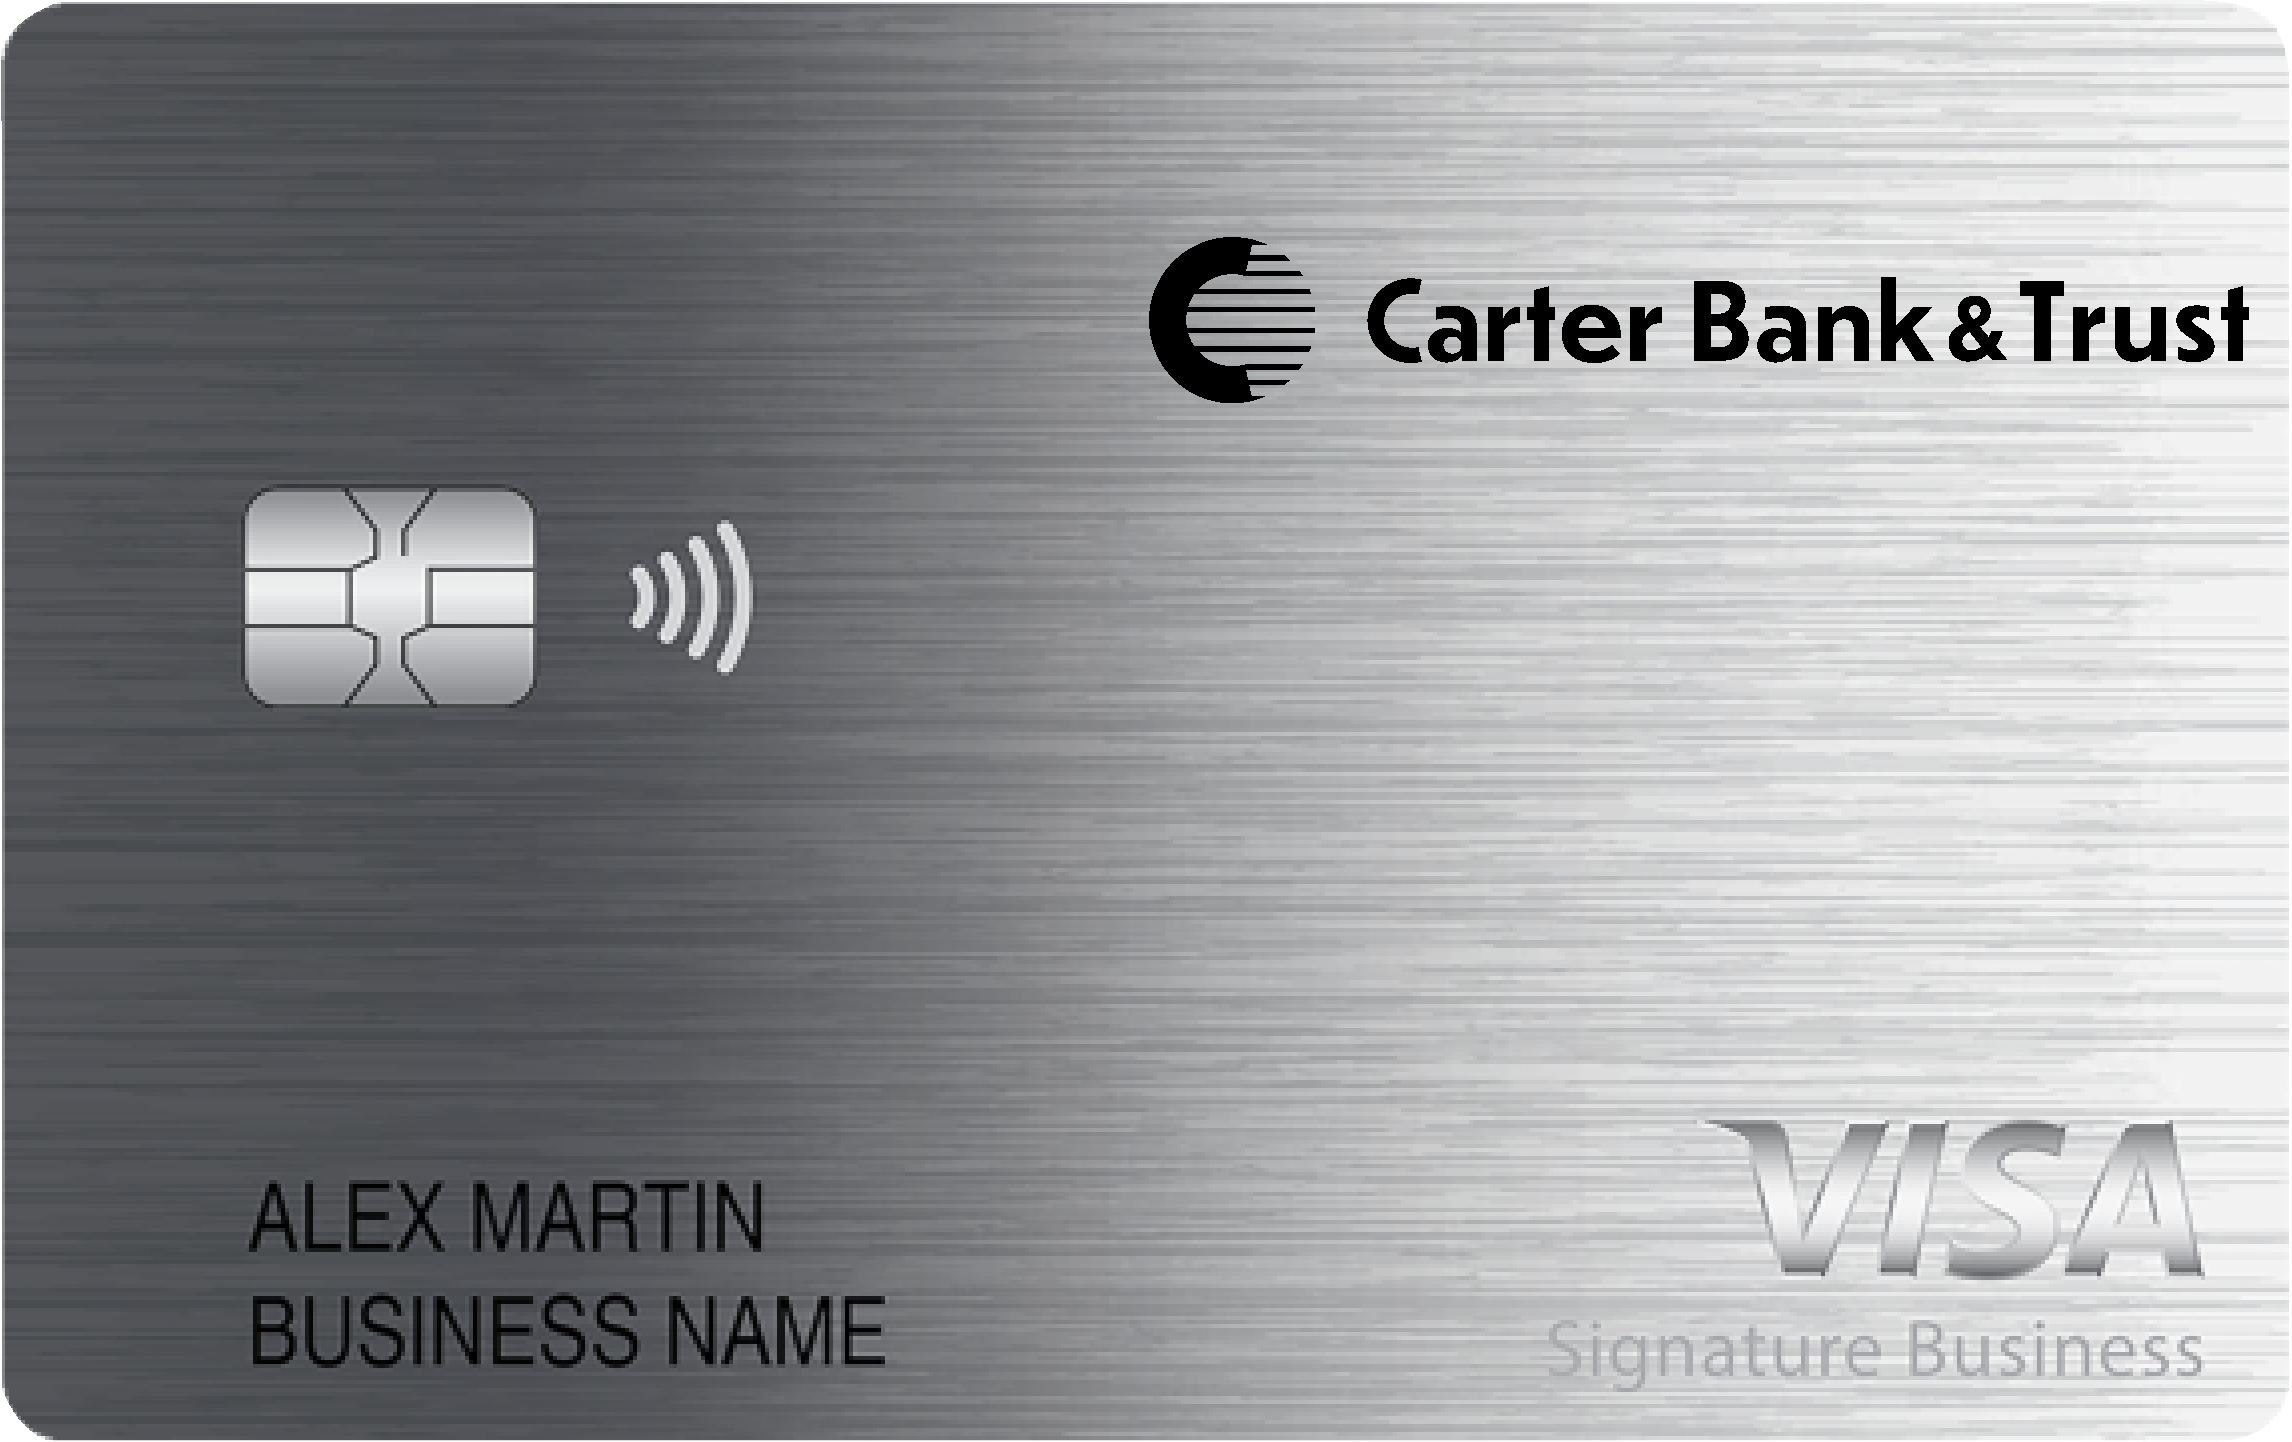 Carter Bank & Trust Smart Business Rewards Card